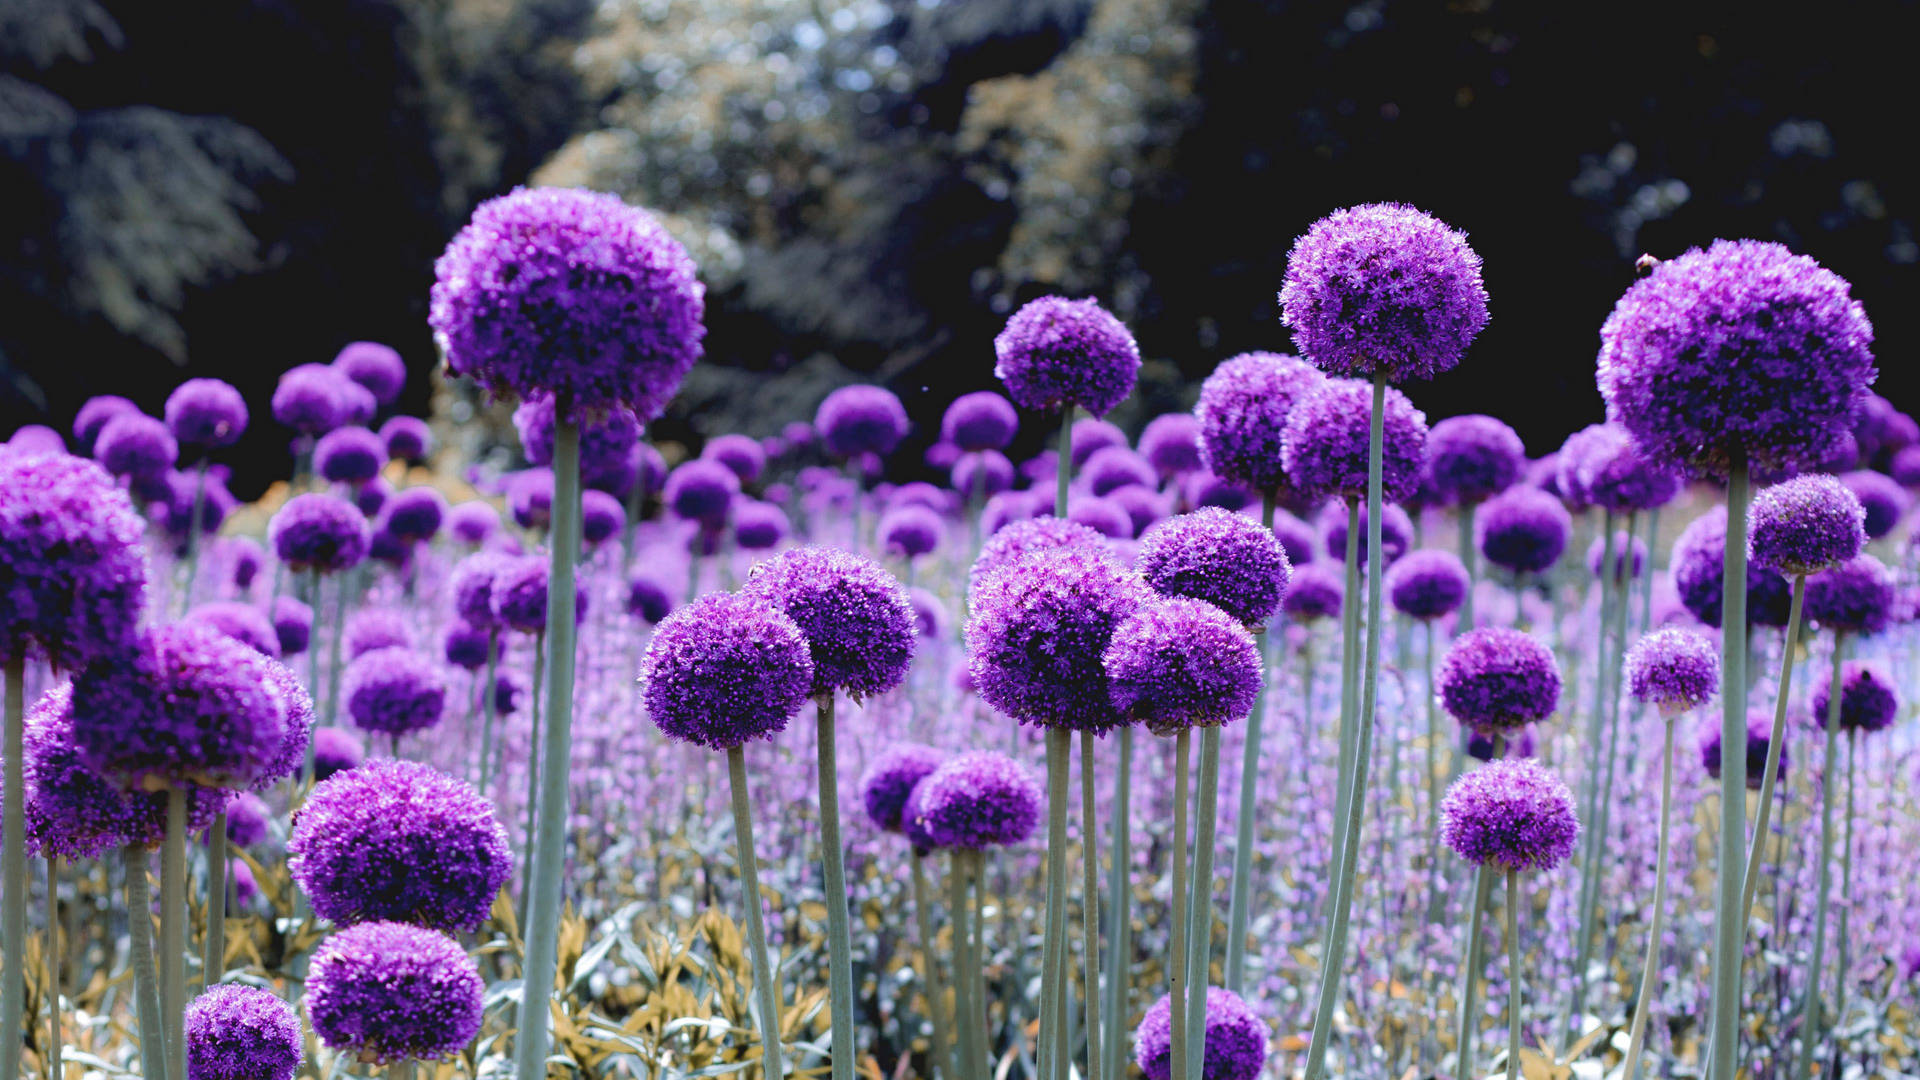 Dandelion-like Purple Flower Background